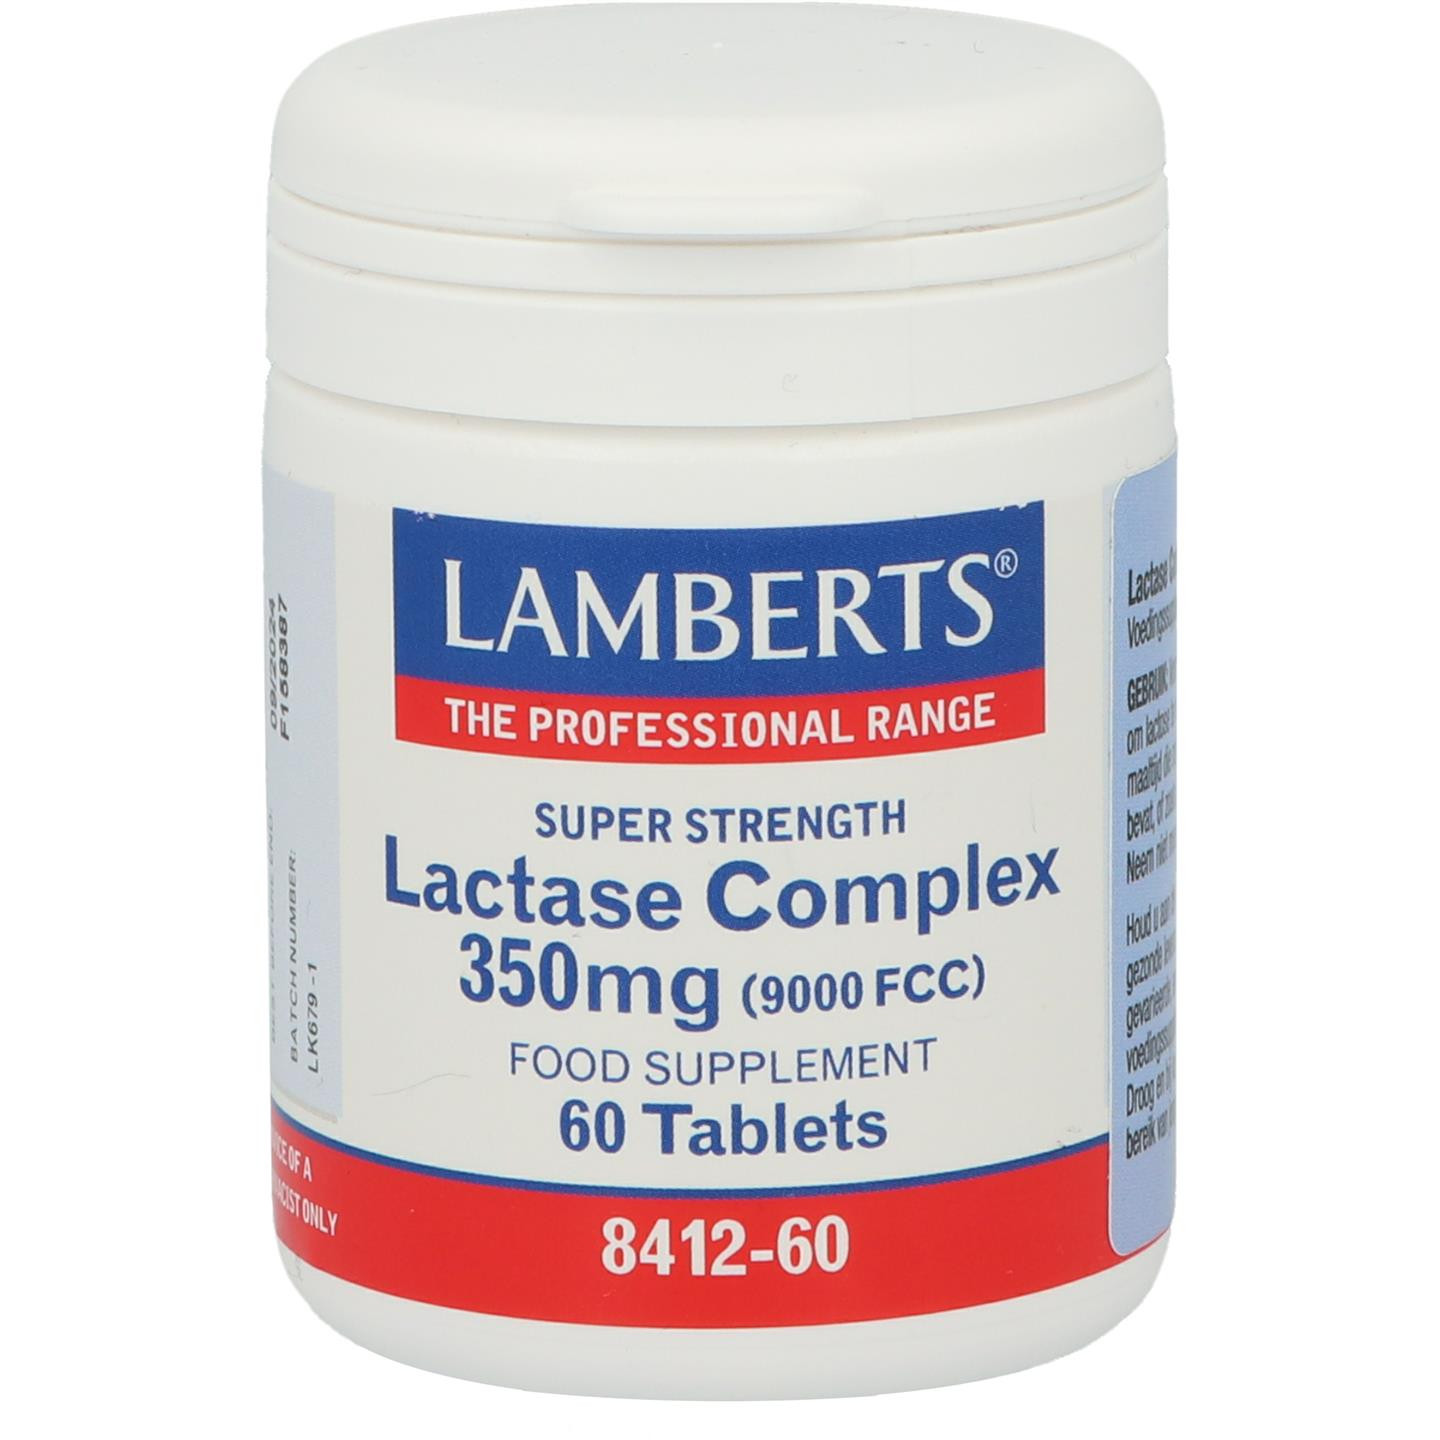 Lactase complex